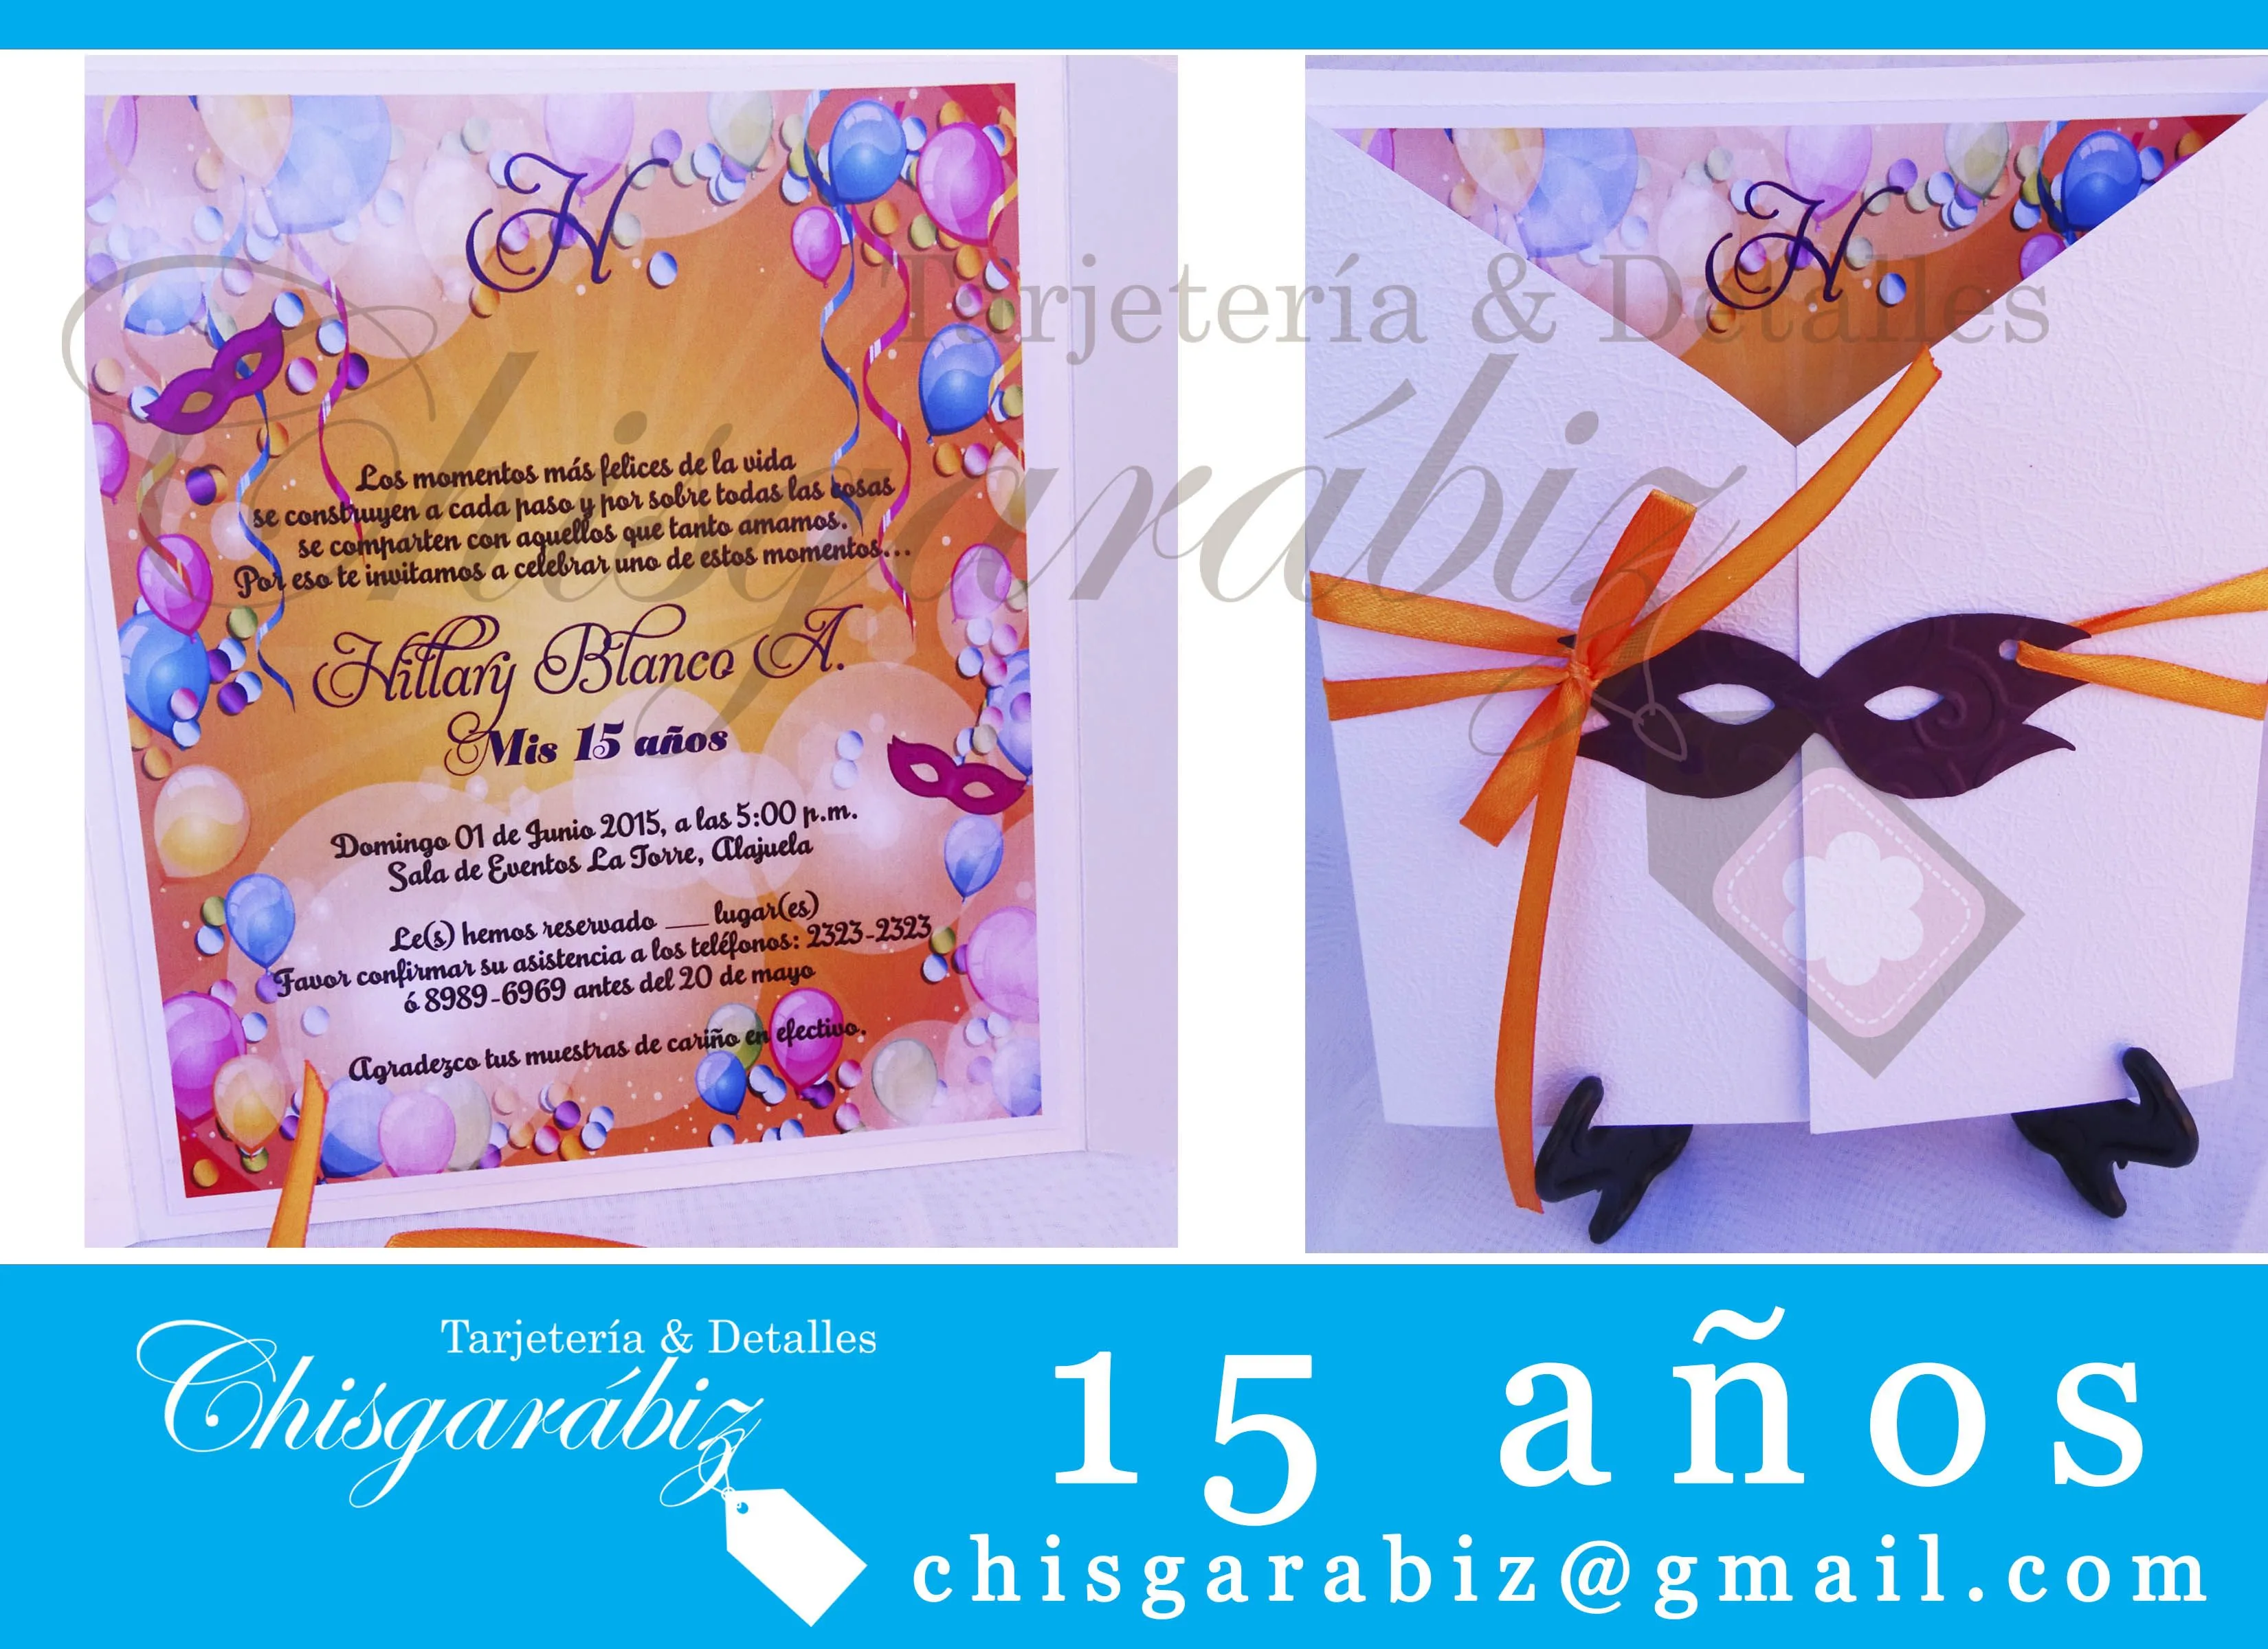 Invitación 15 años Carnaval, en Costa Rica, chisgarabiz@gmail.com